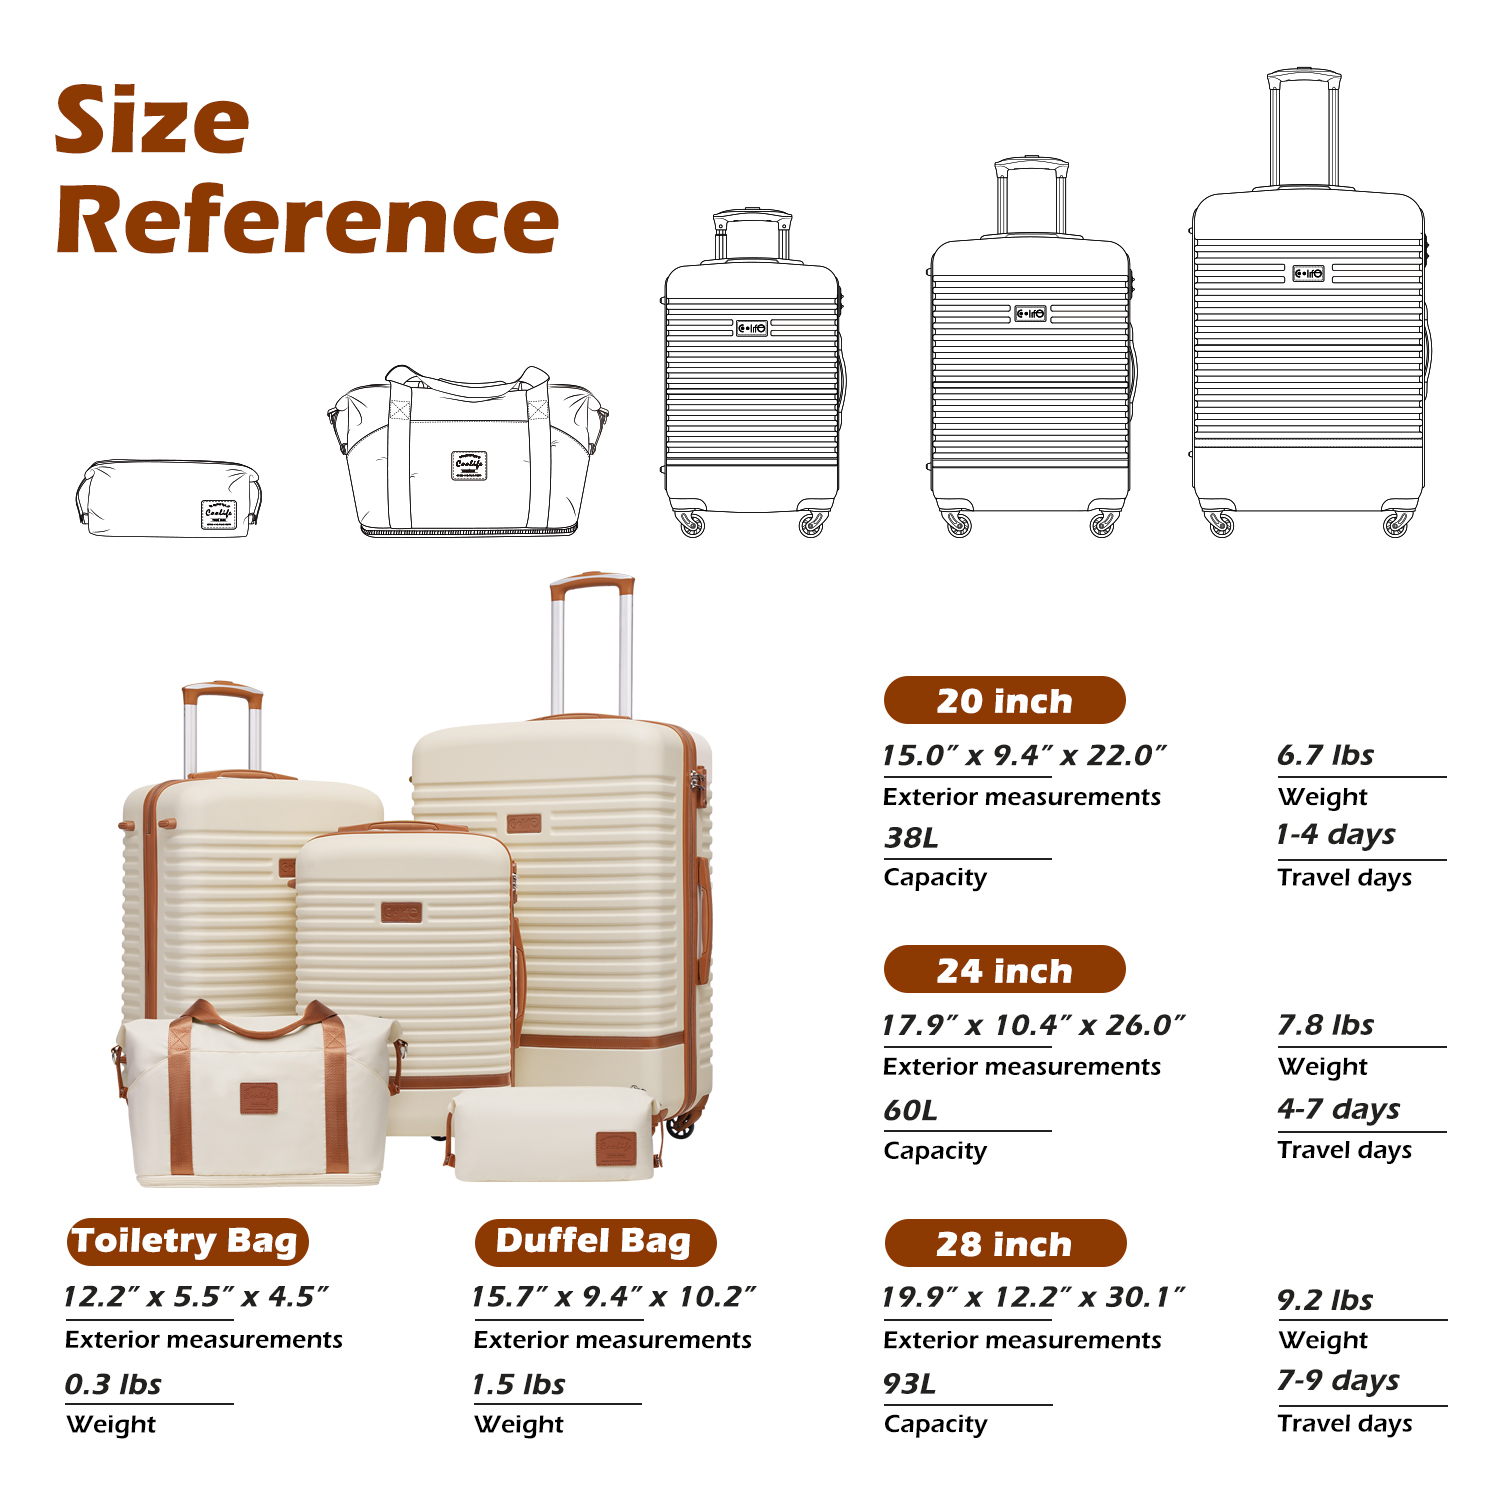 Coolife Luggage Set Suitcase Set Carry On Hardside Luggage TSA Lock Spinner Wheels Hardshell Lightweight Luggage Set